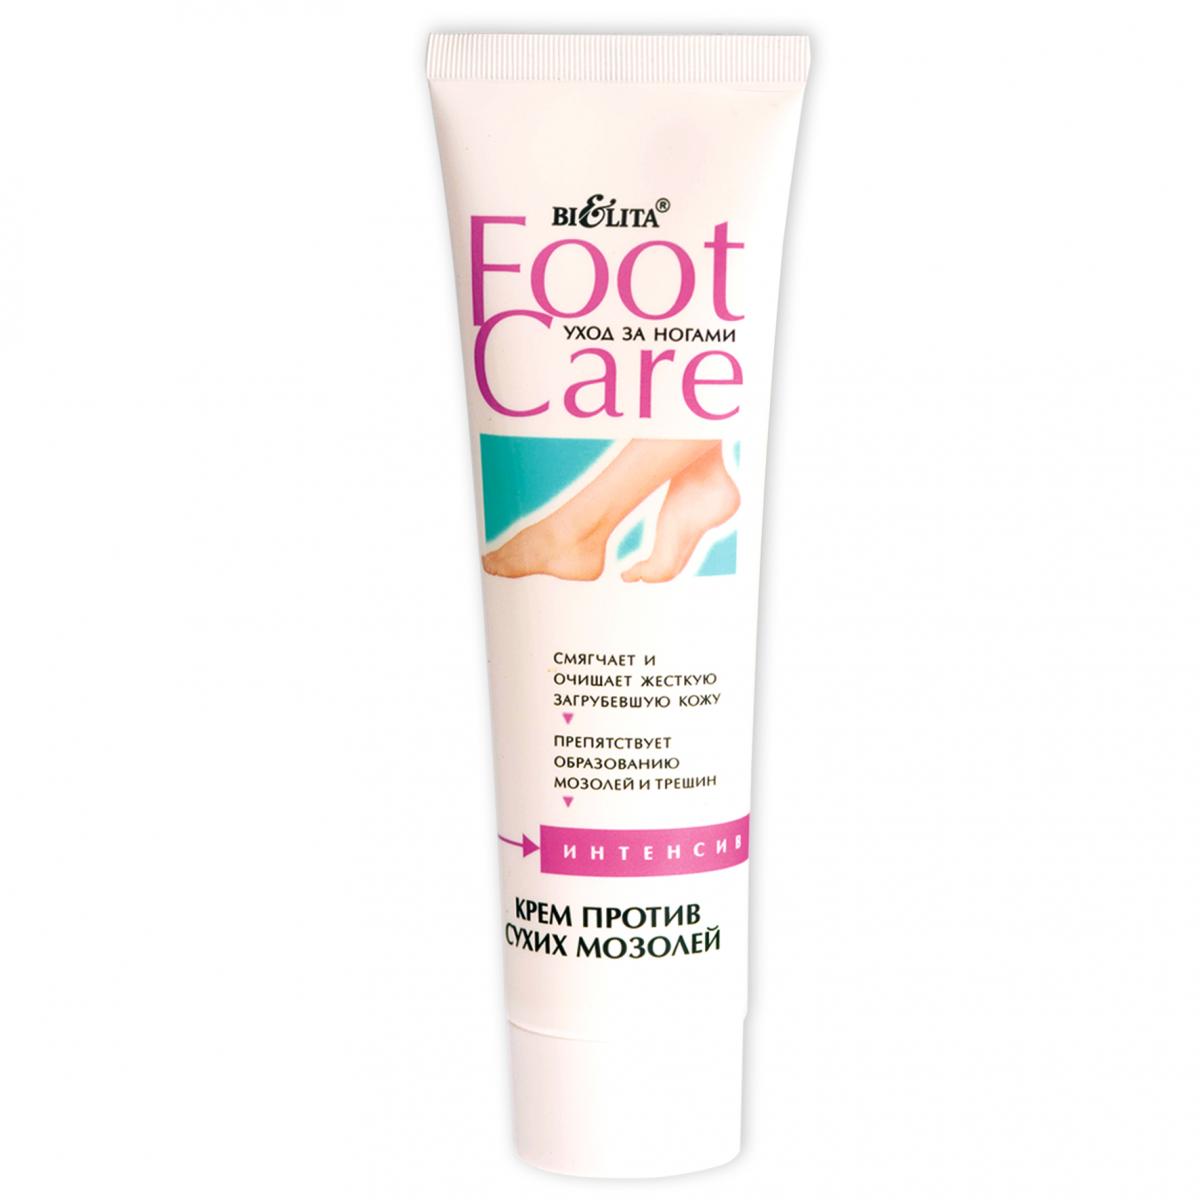 Картинка Белита "Foot Care" Крем для ног против сухих мозолей, 100 мл BeautyConceptPro